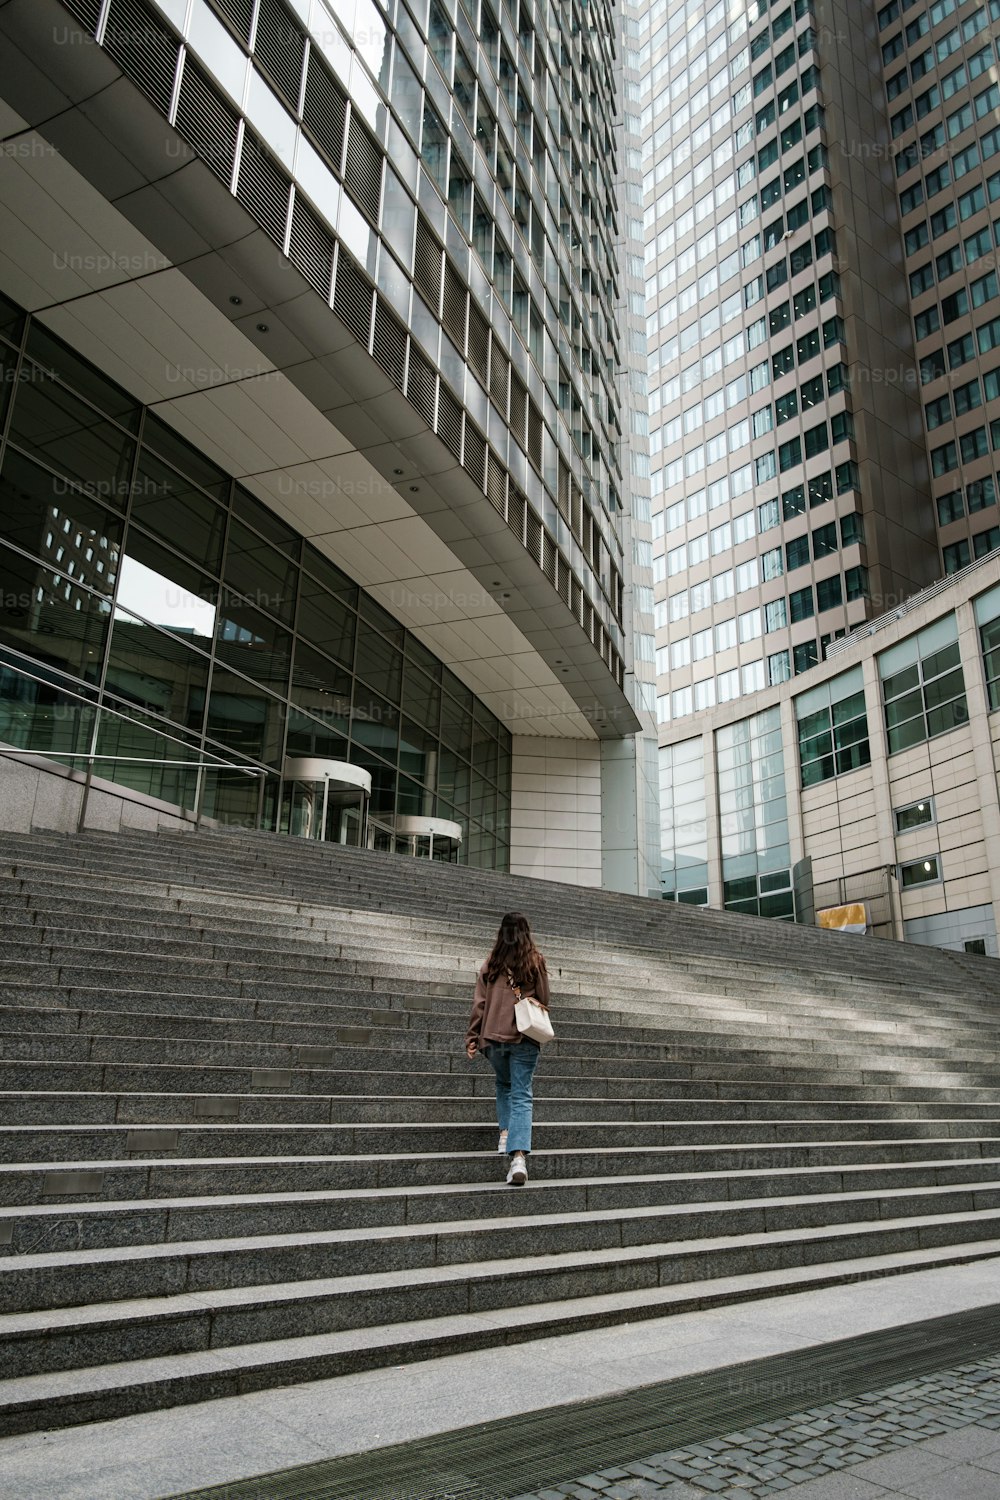 Una mujer subiendo unos escalones frente a un edificio